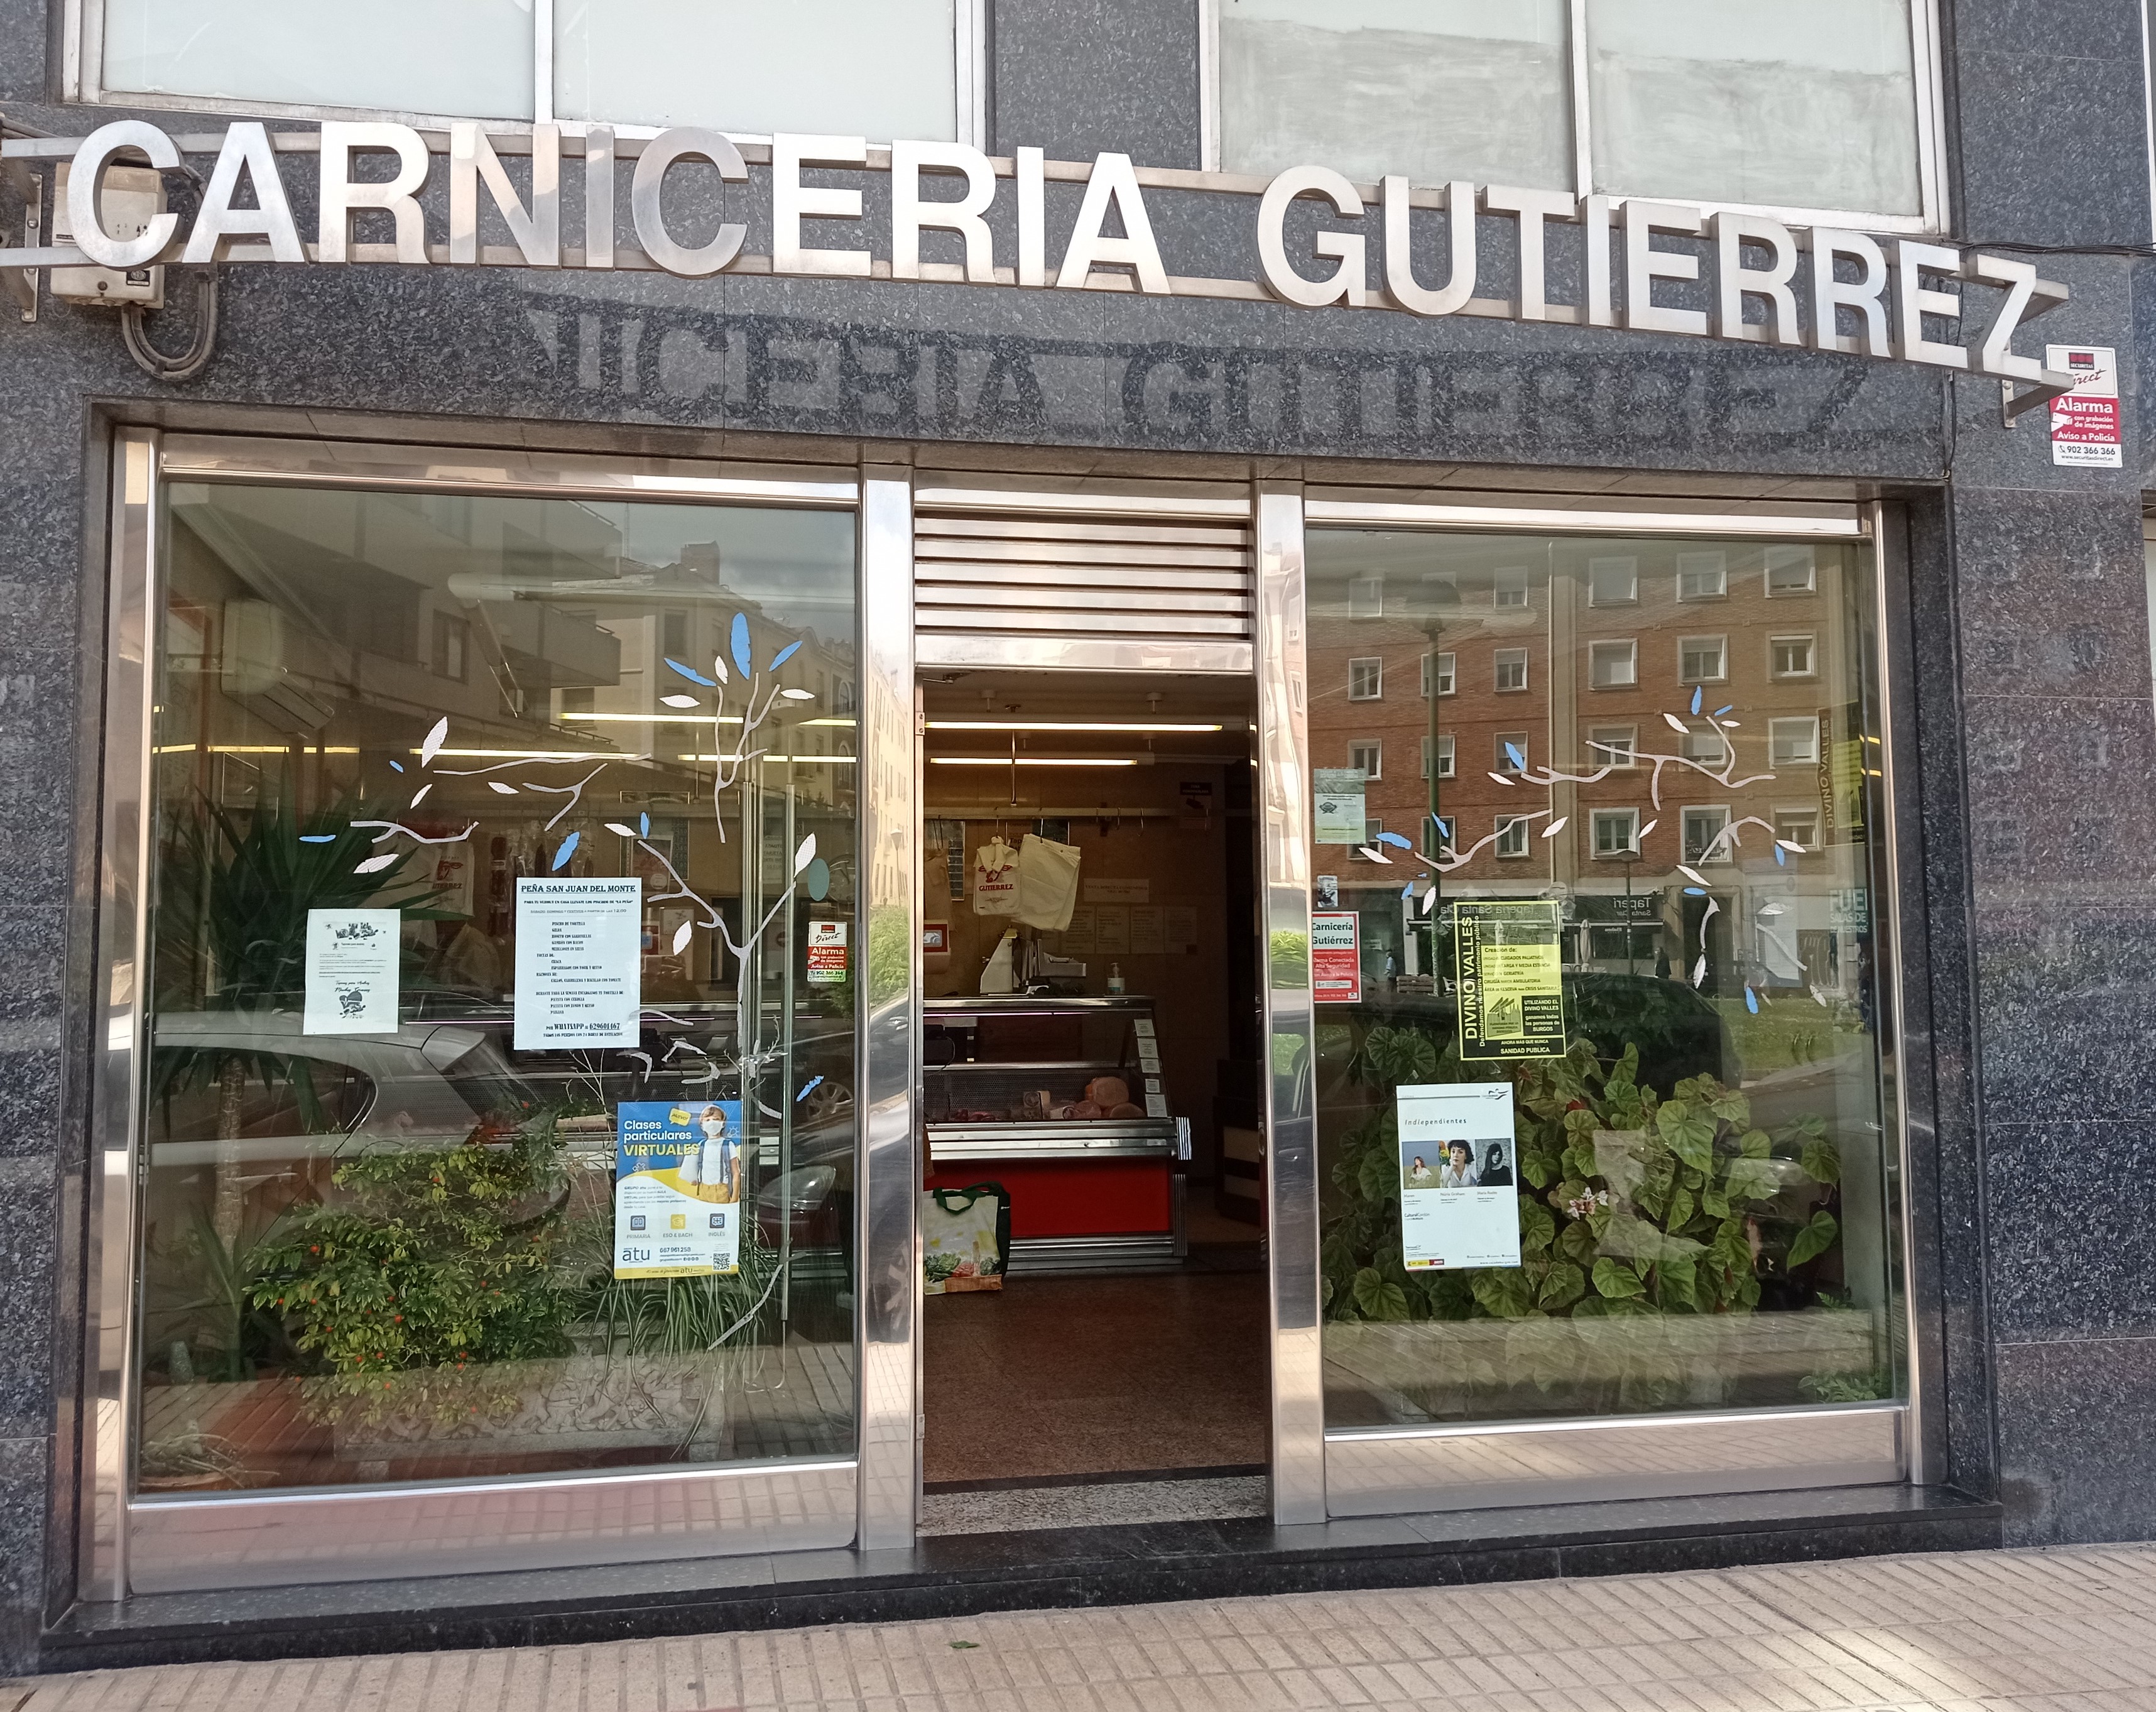 Carniceria Gutierrez